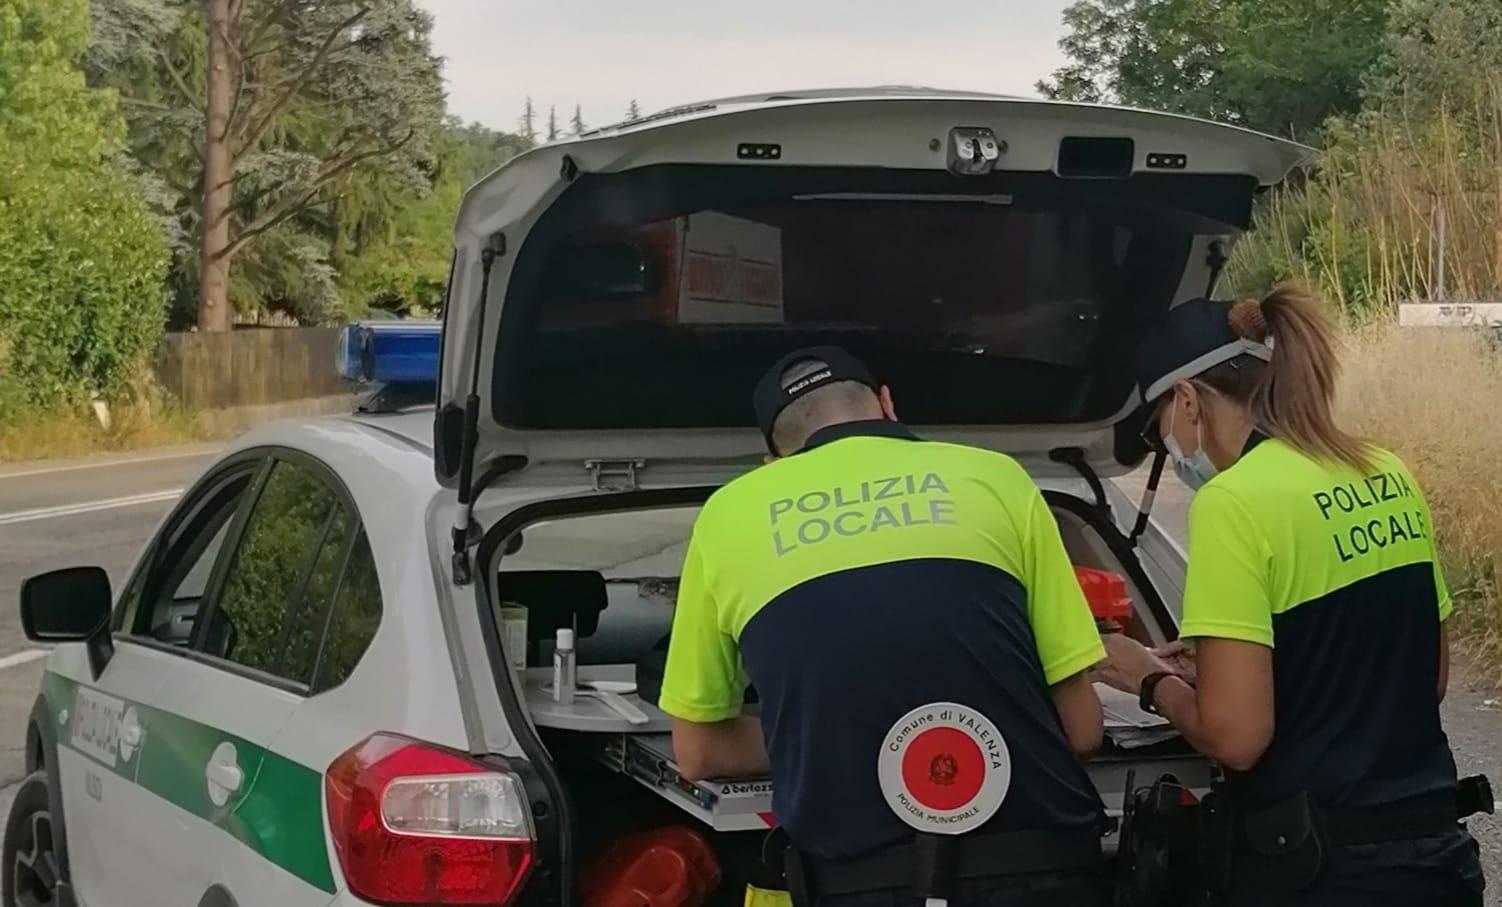 Buone notizie da Valenza: l’automobilista coinvolto nell’incidente col motorino ha risposto all’appello